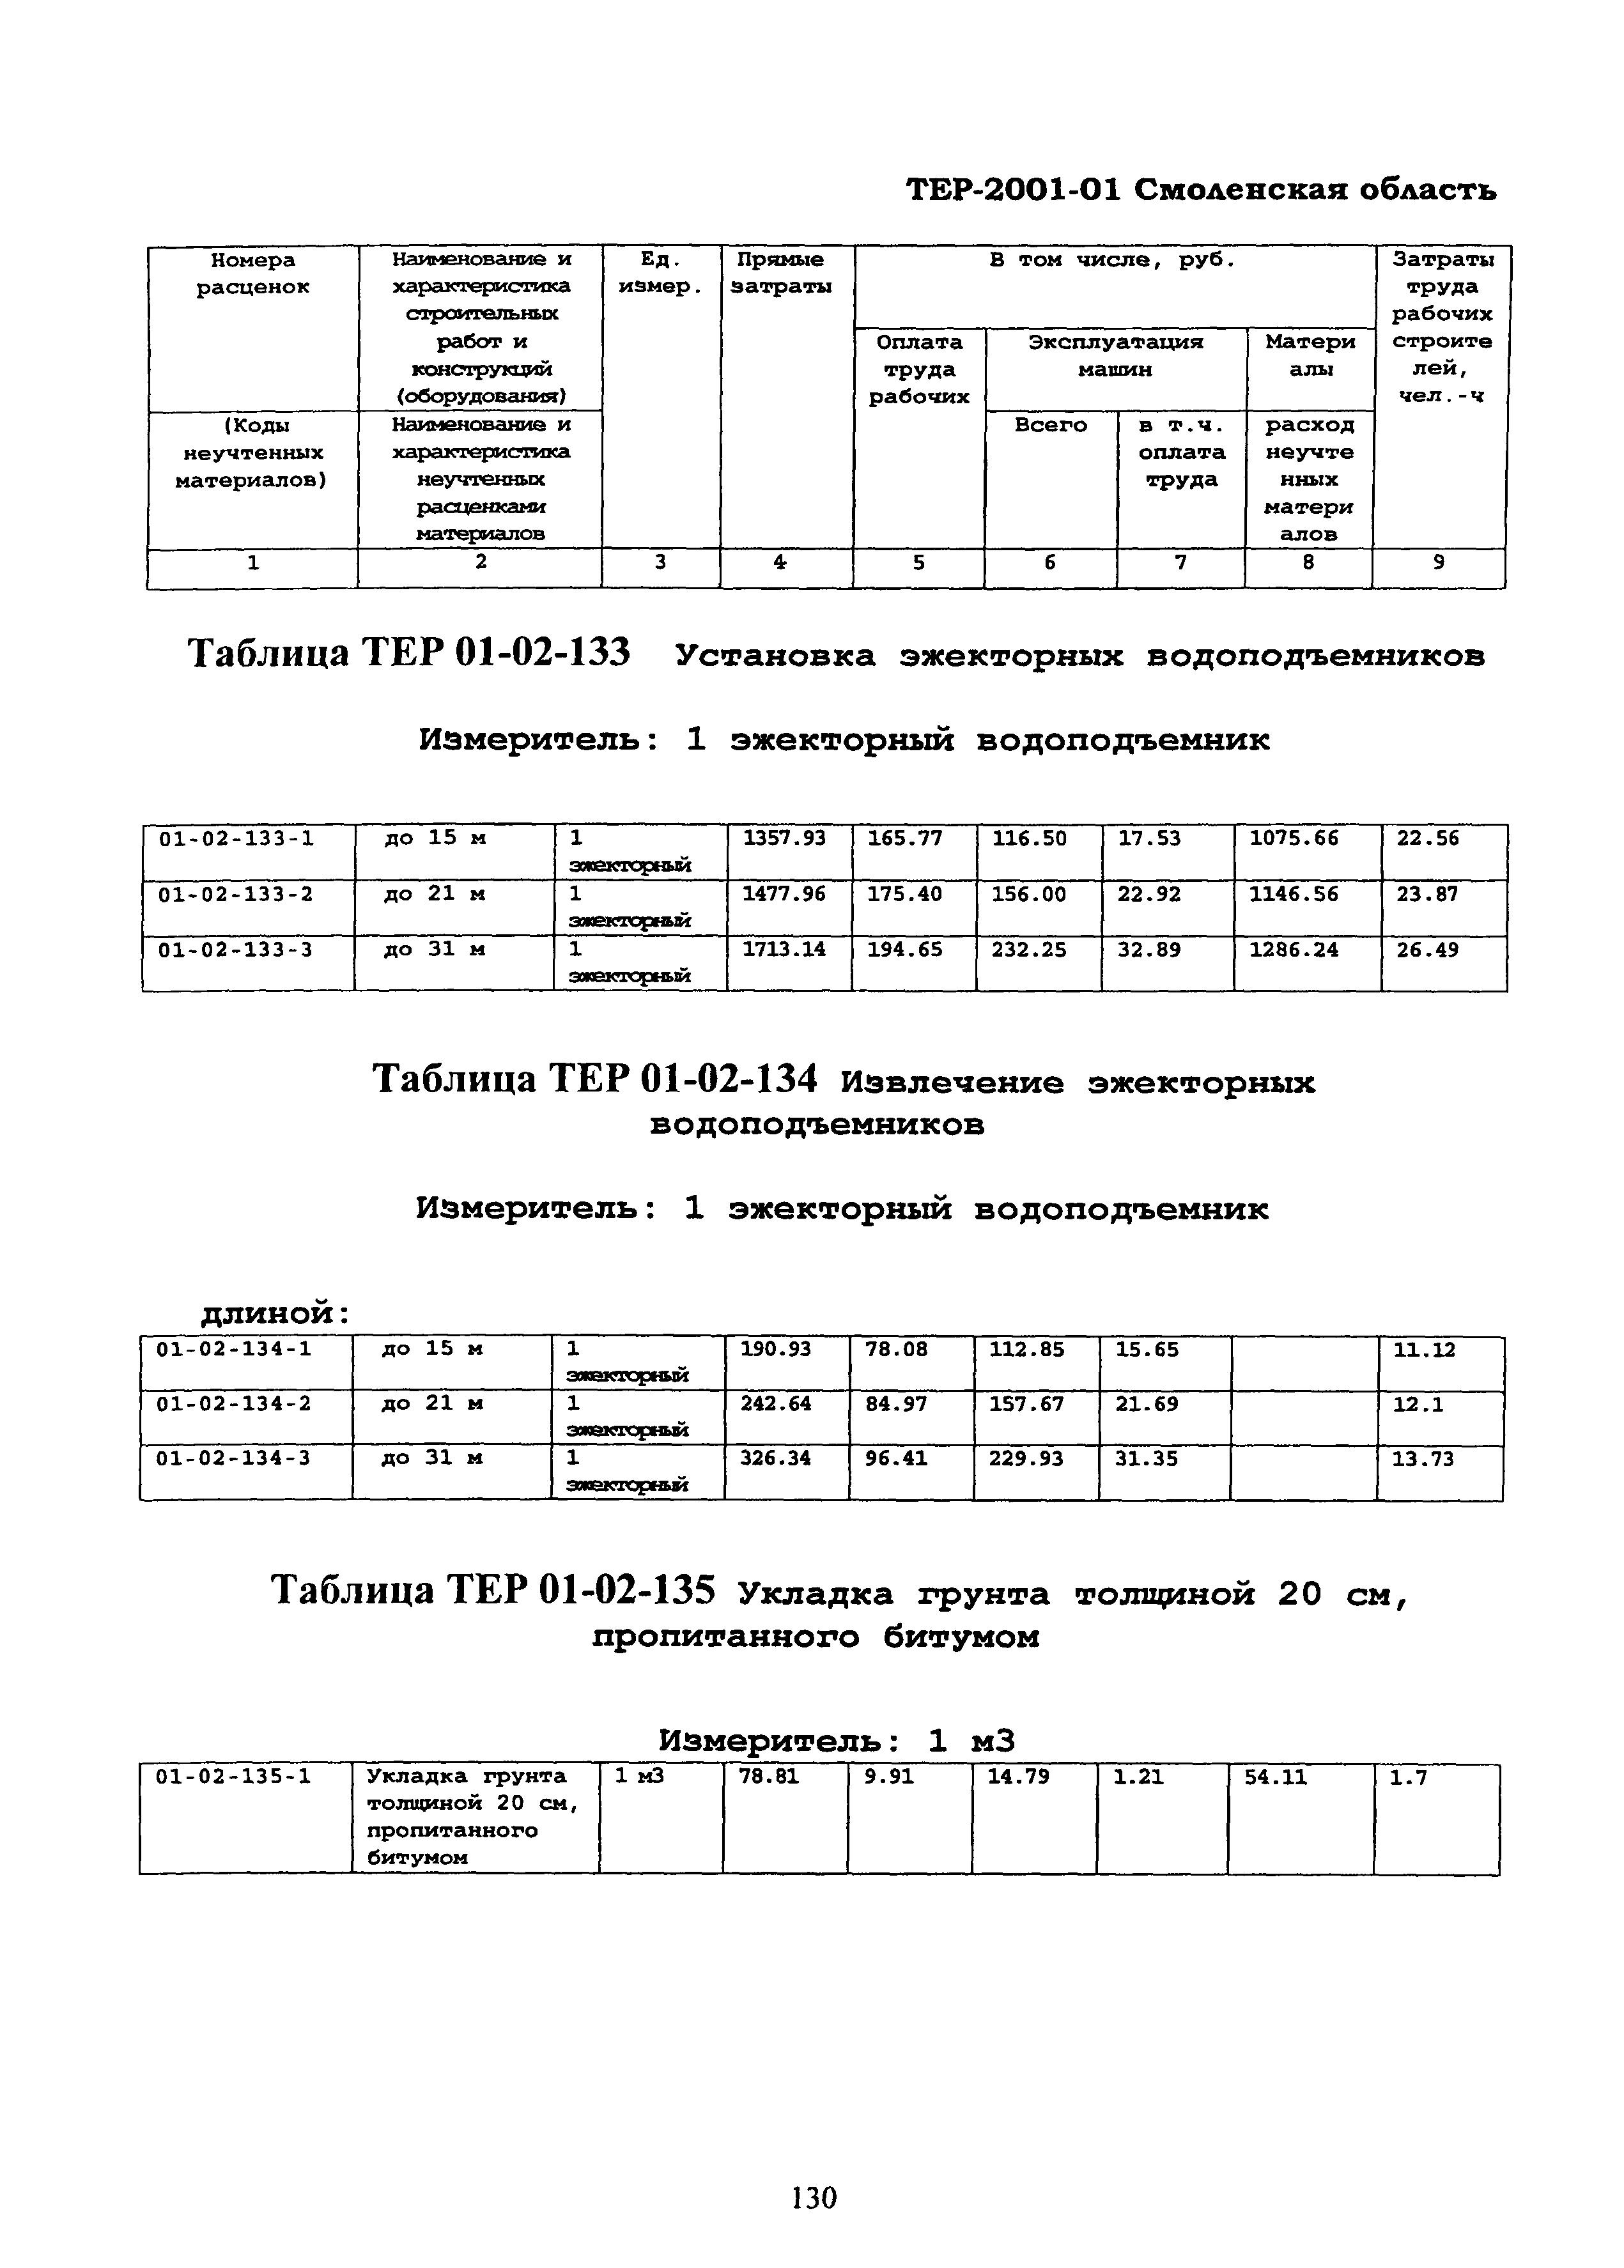 ТЕР Смоленская область 2001-01